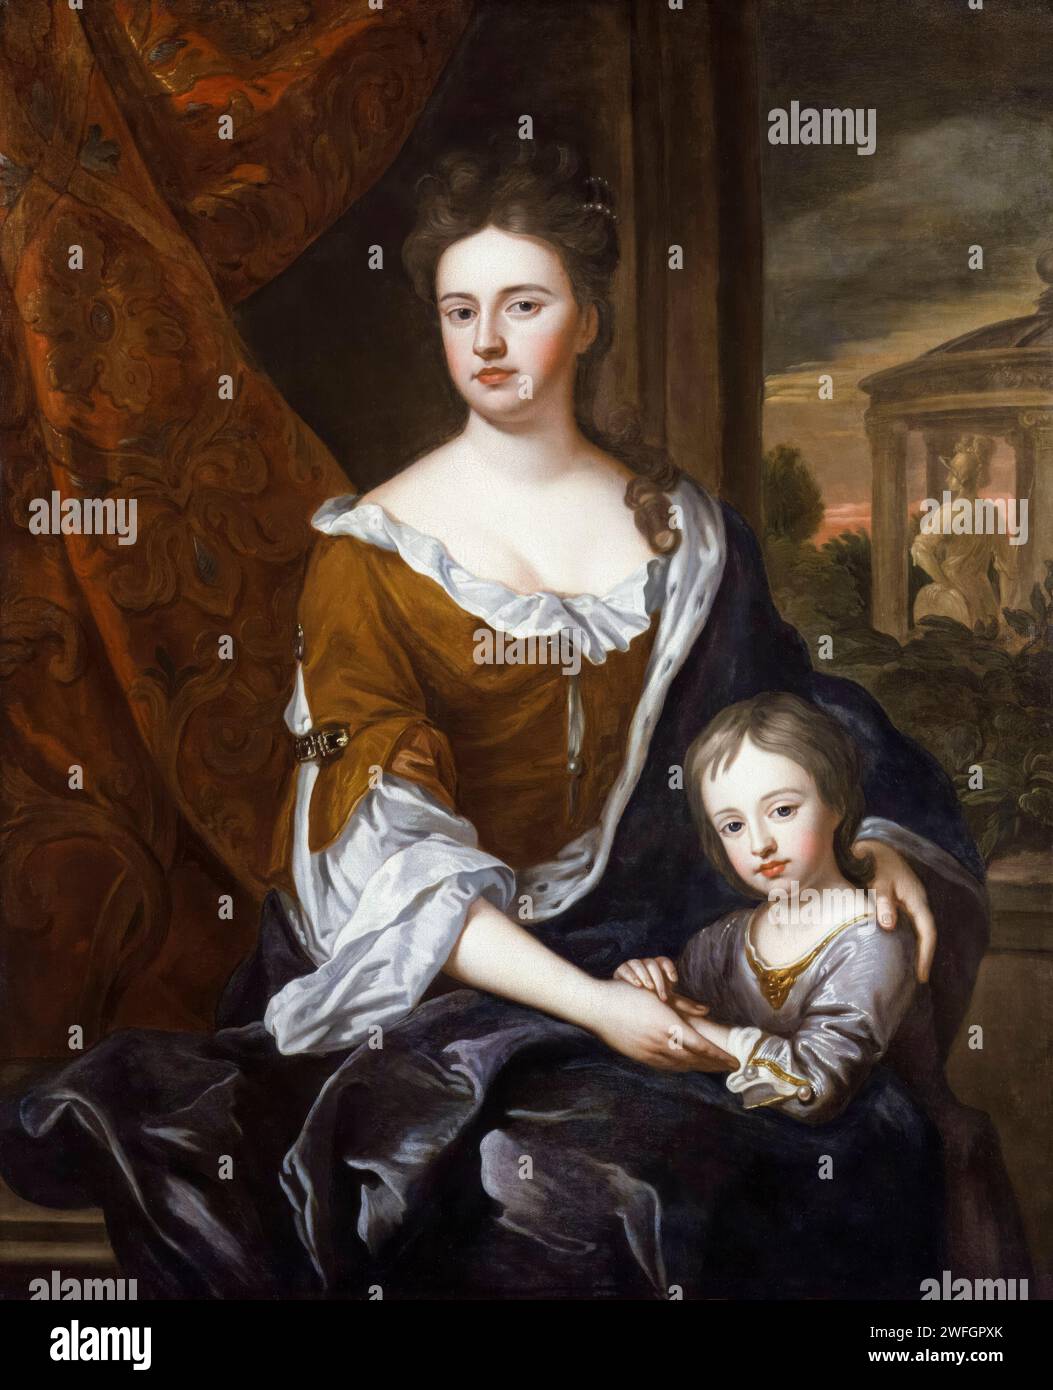 La regina Anna (1665-1714) e suo figlio il principe Guglielmo, duca di Gloucester (1689-1700), ritrattista dipinto ad olio su tela dopo Sir Godfrey Kneller, circa 1694 Foto Stock